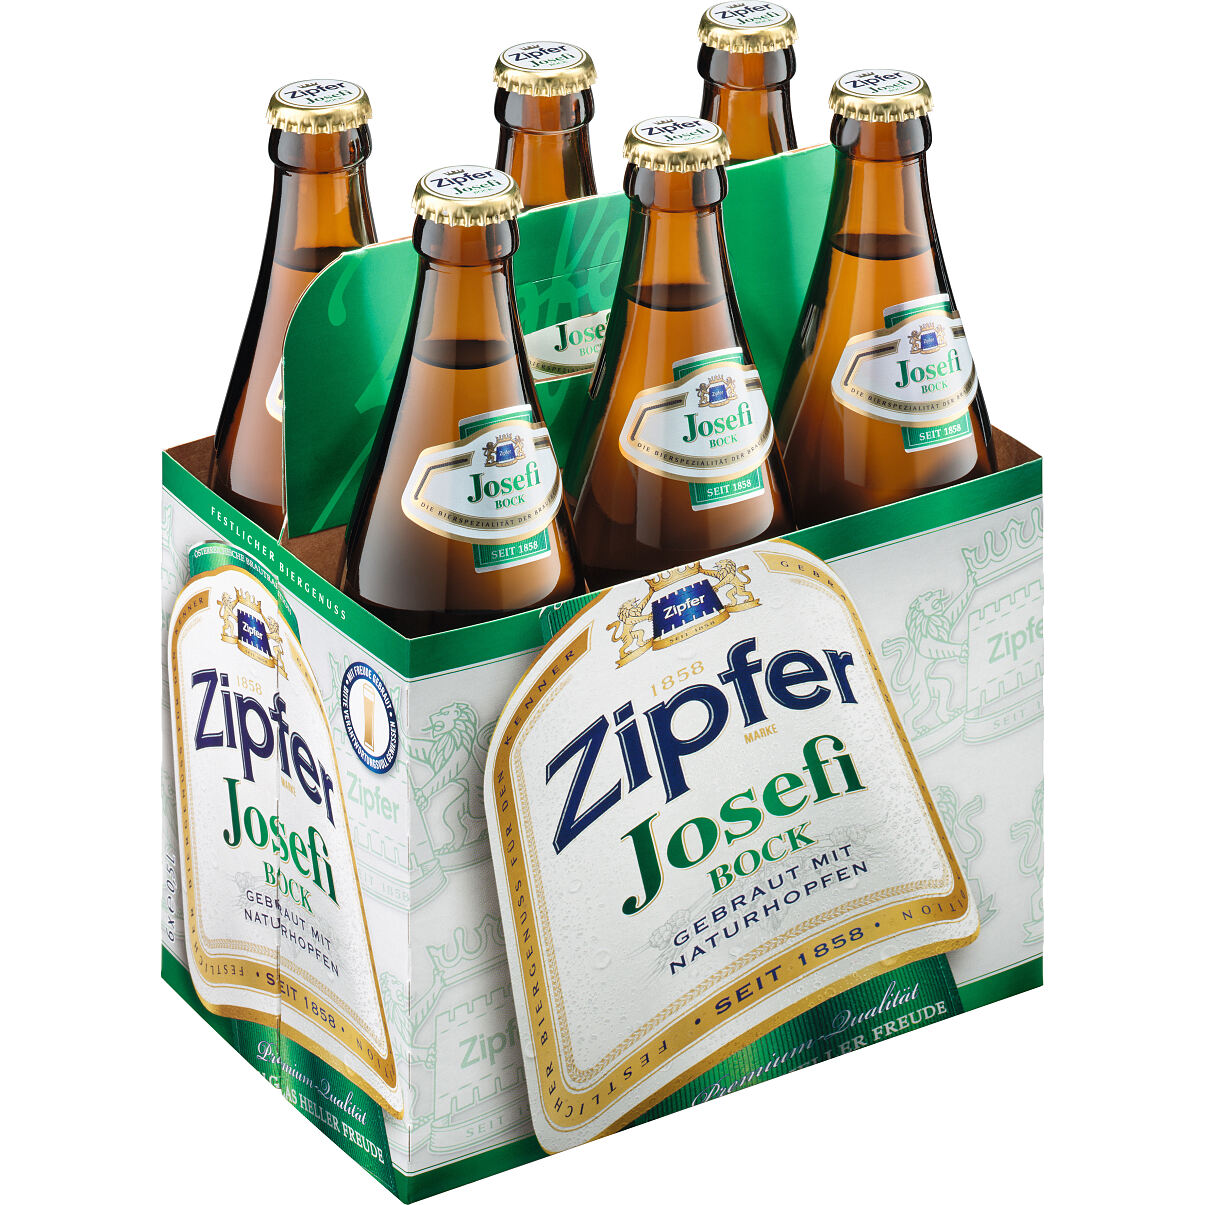 Saisonale Bierspezialität: Josefi Bock schmeckt